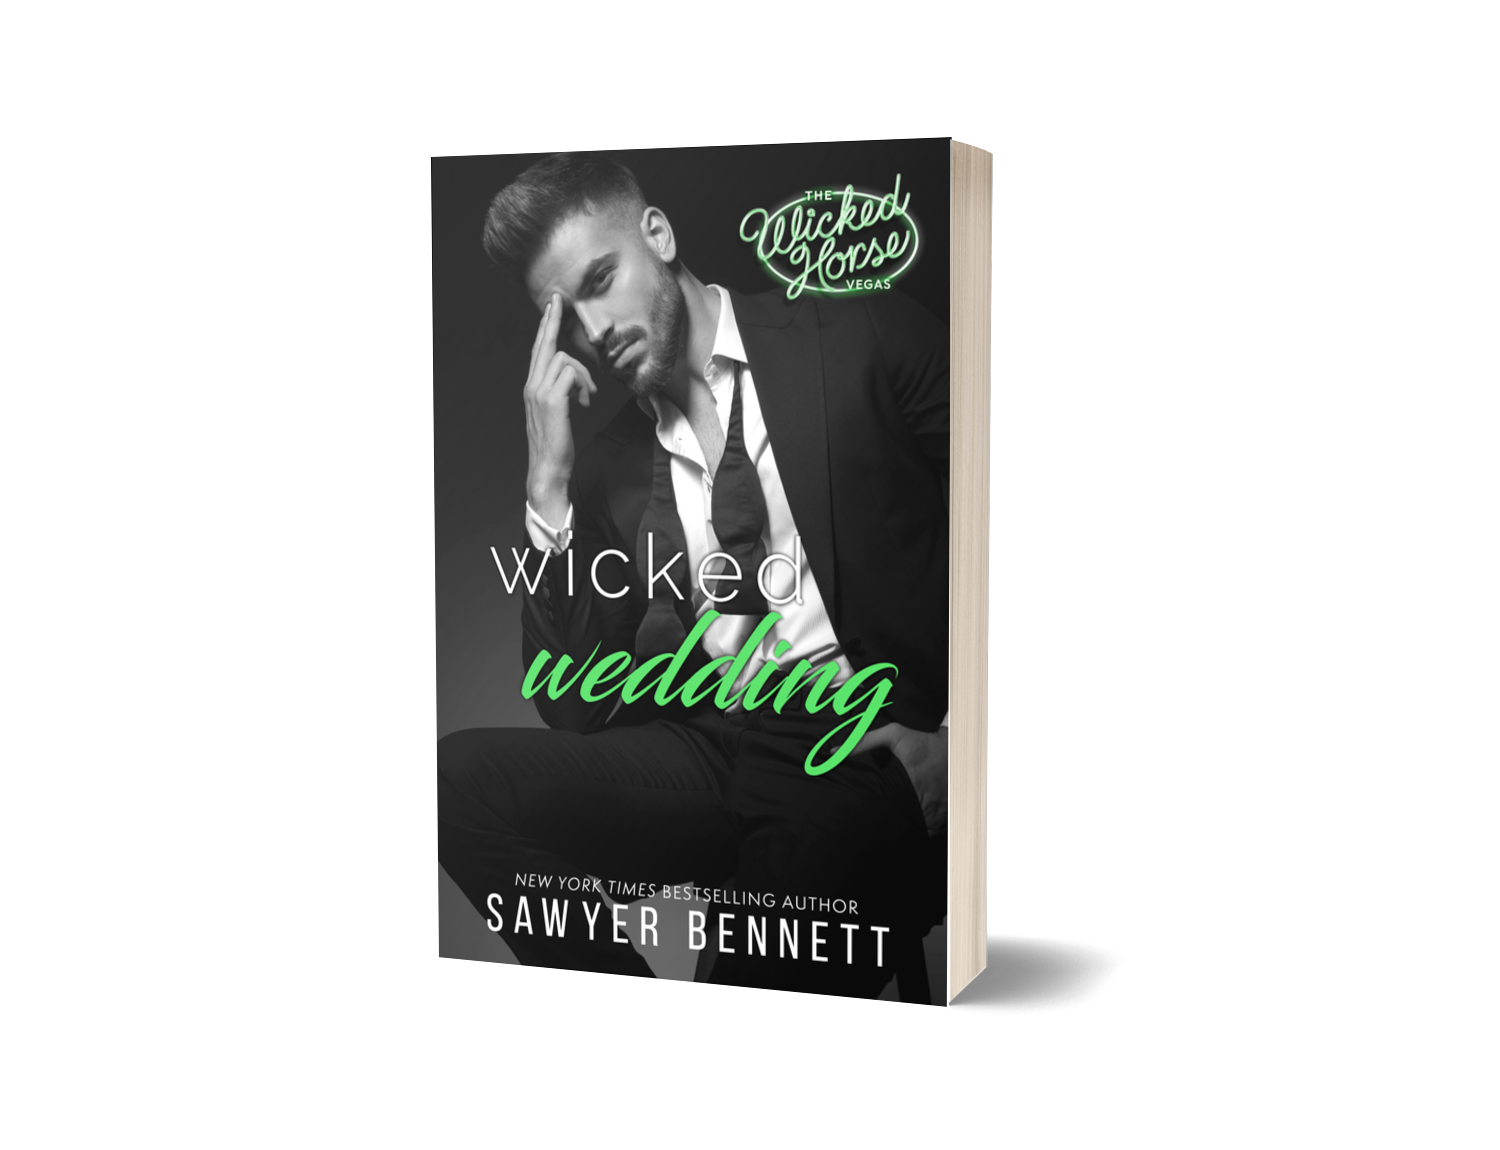 Wicked Wedding - Sawyer Bennett